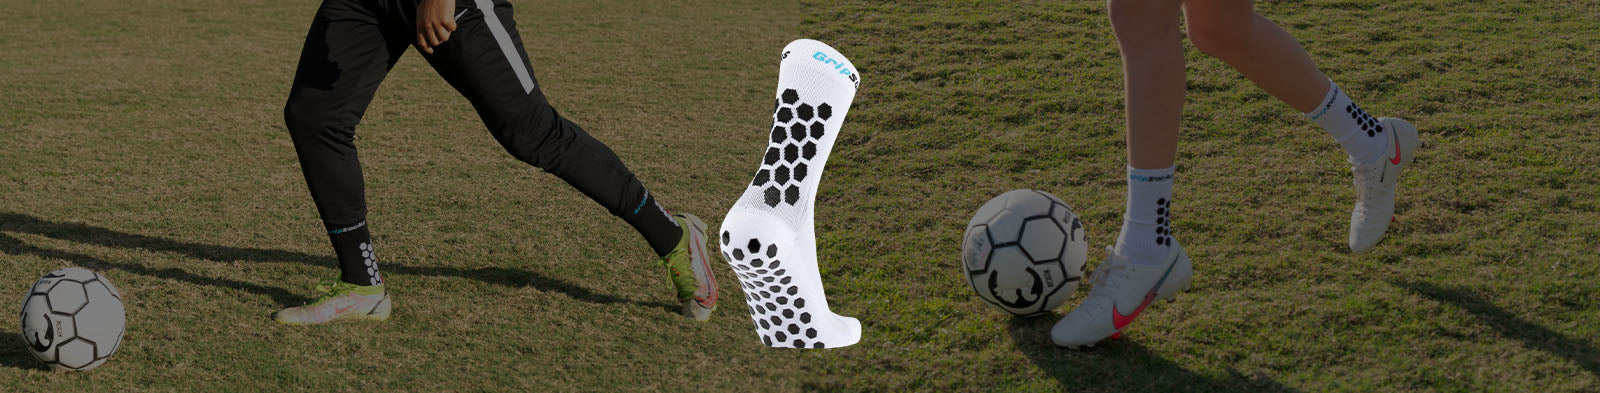 Soccer Grip Socks – GripSocks